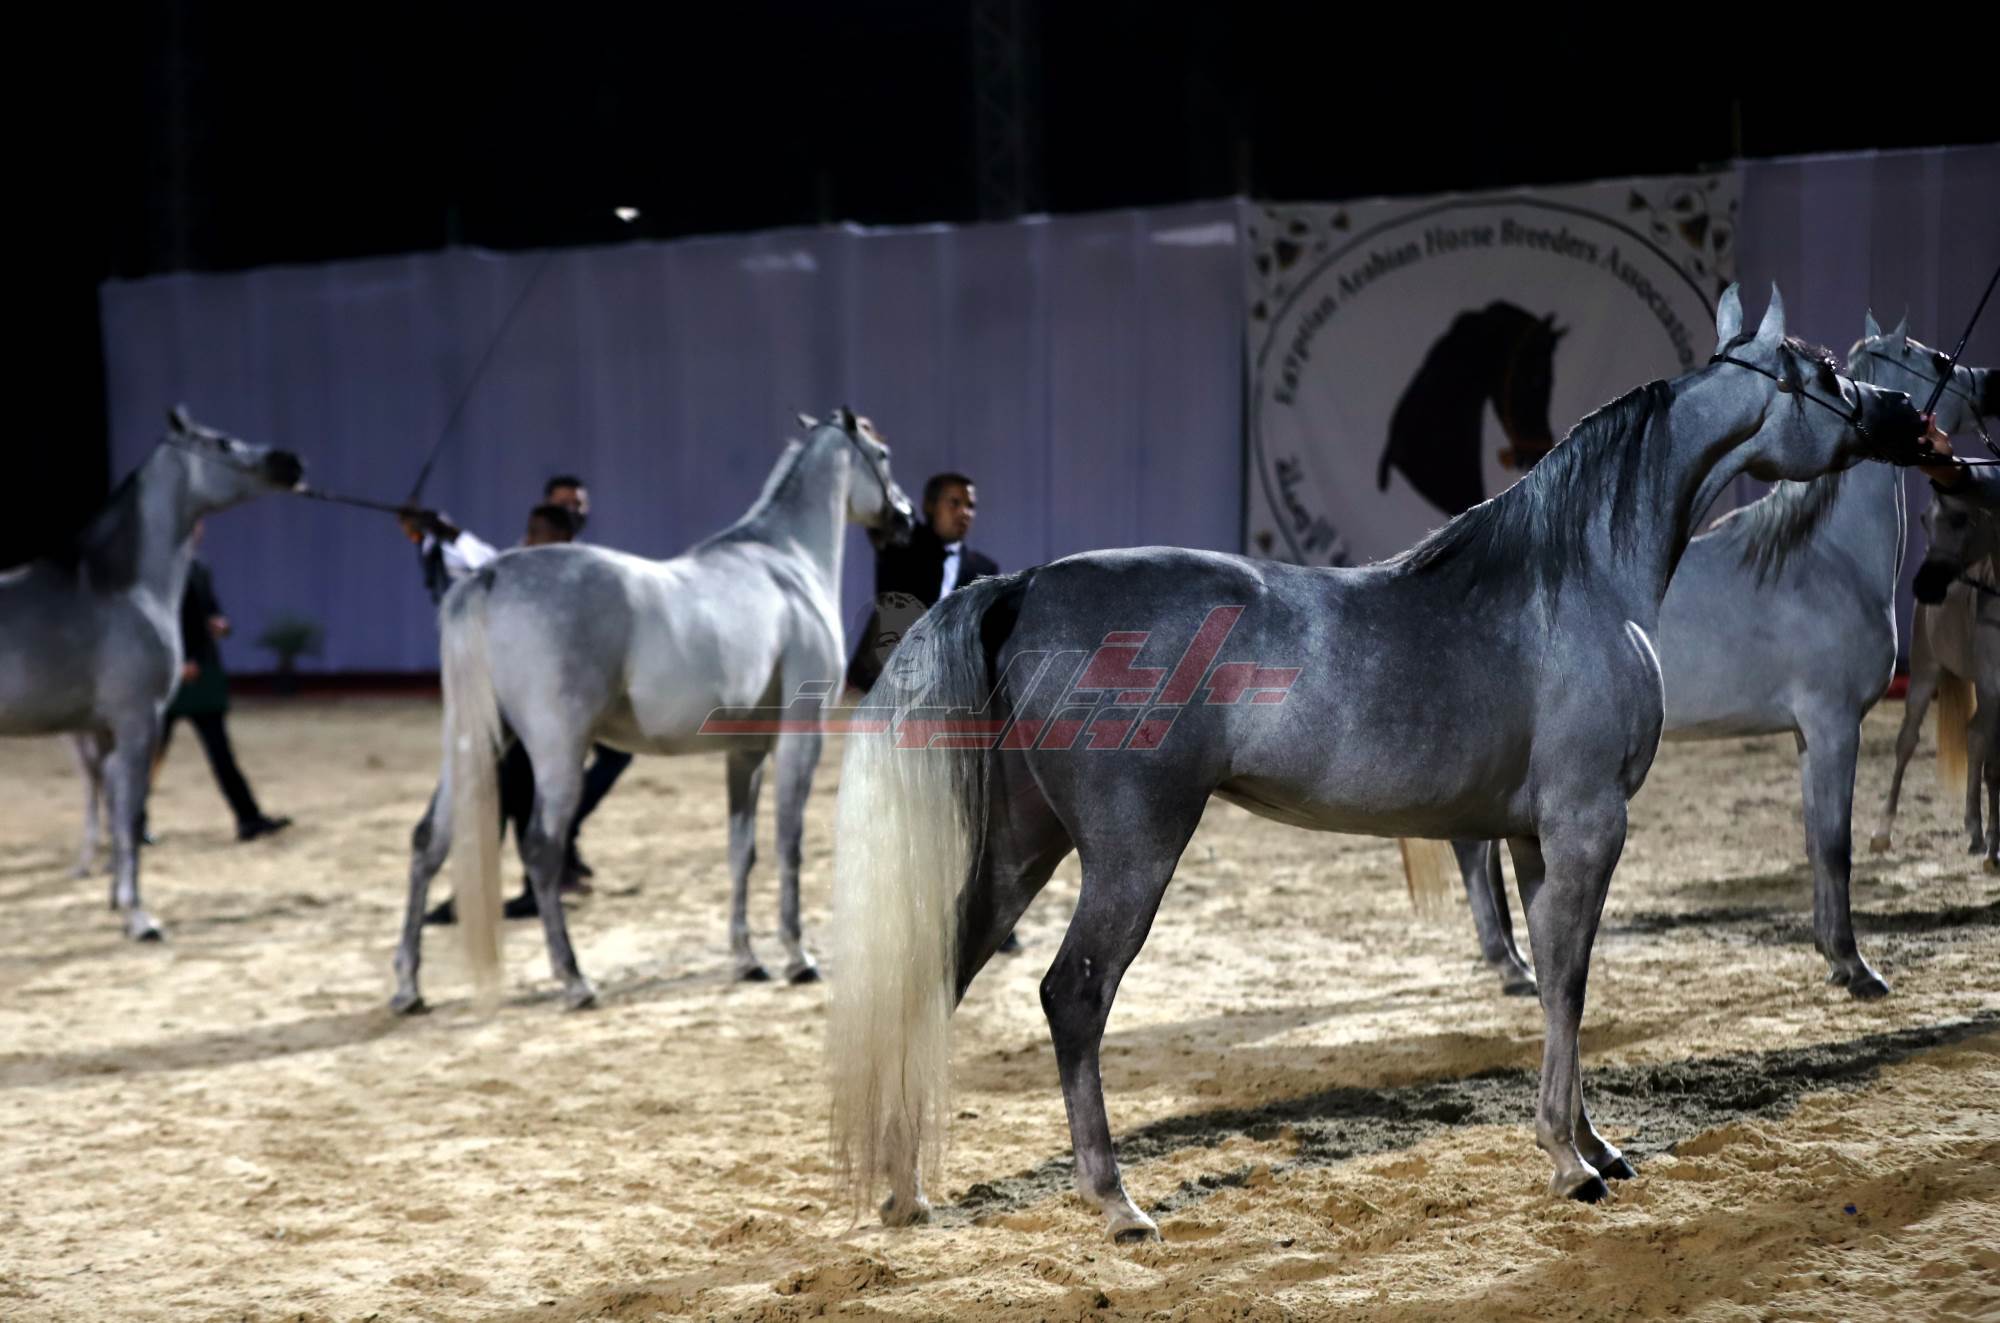 بوابة روز اليوسف شاهد نهائي بطولة مصر لجمال الخيول العربية الأصيلة